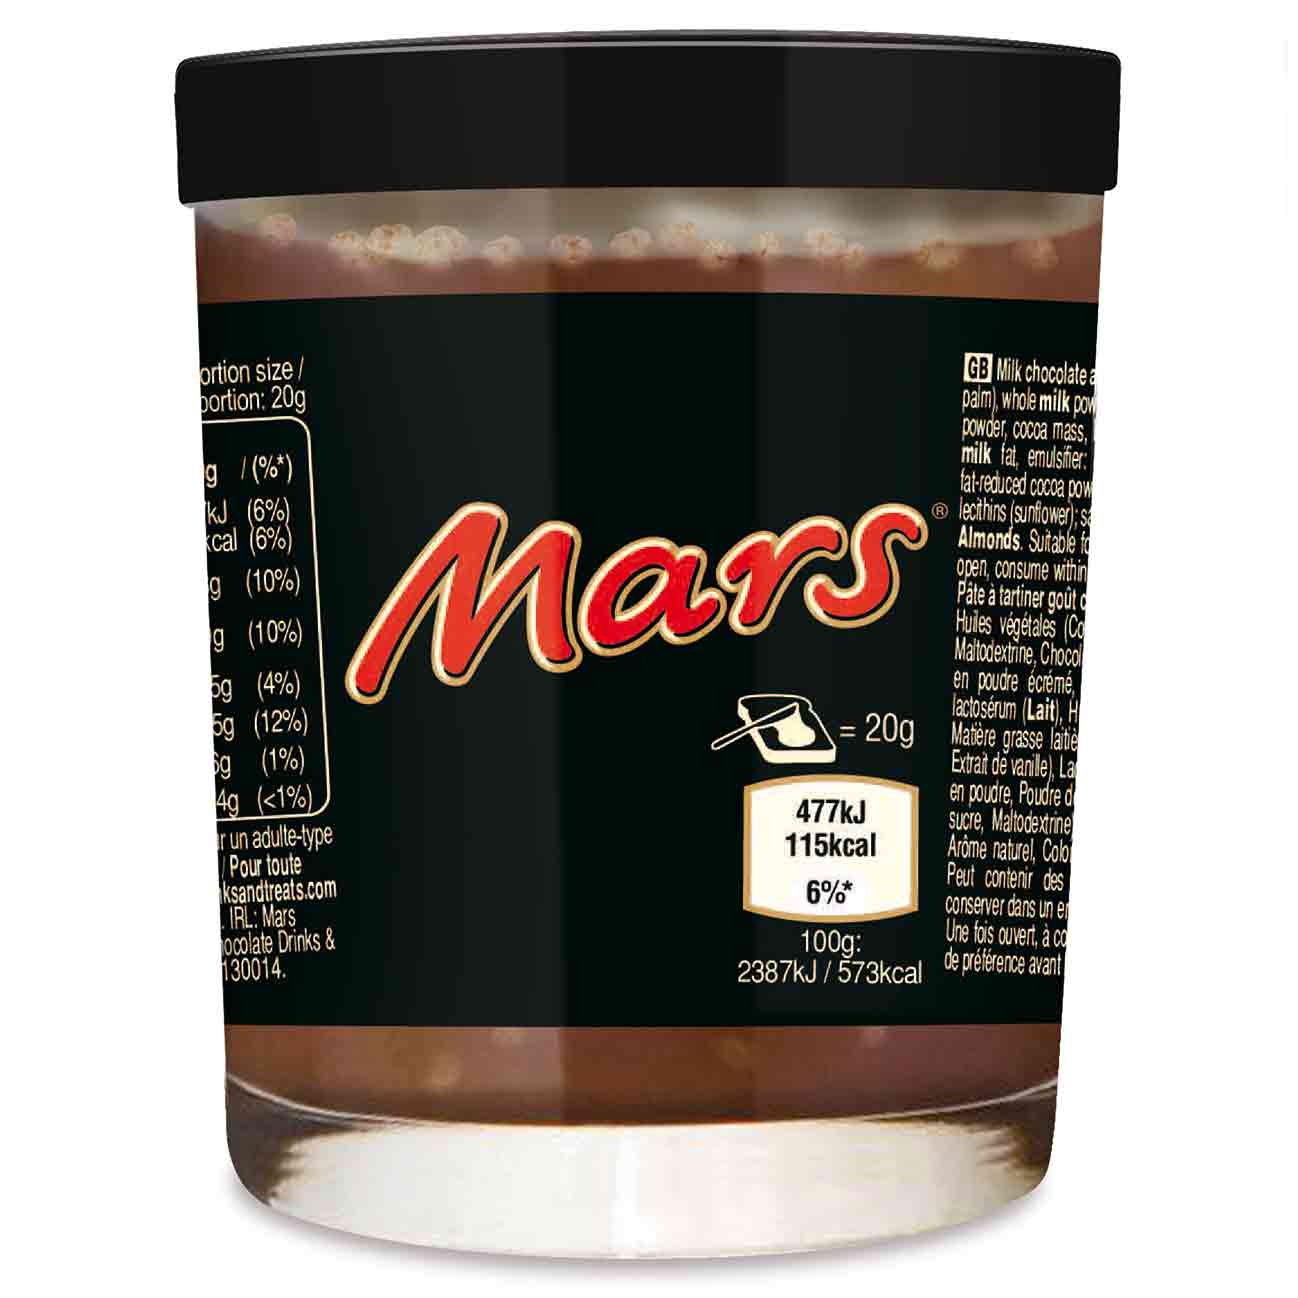 Choco паста. Шоколадная паста Mars 200 гр. Шоколадная паста Марс 200г. Паста 200g Twix choc spread СГ. Шоколадная паста Milky way 200g.